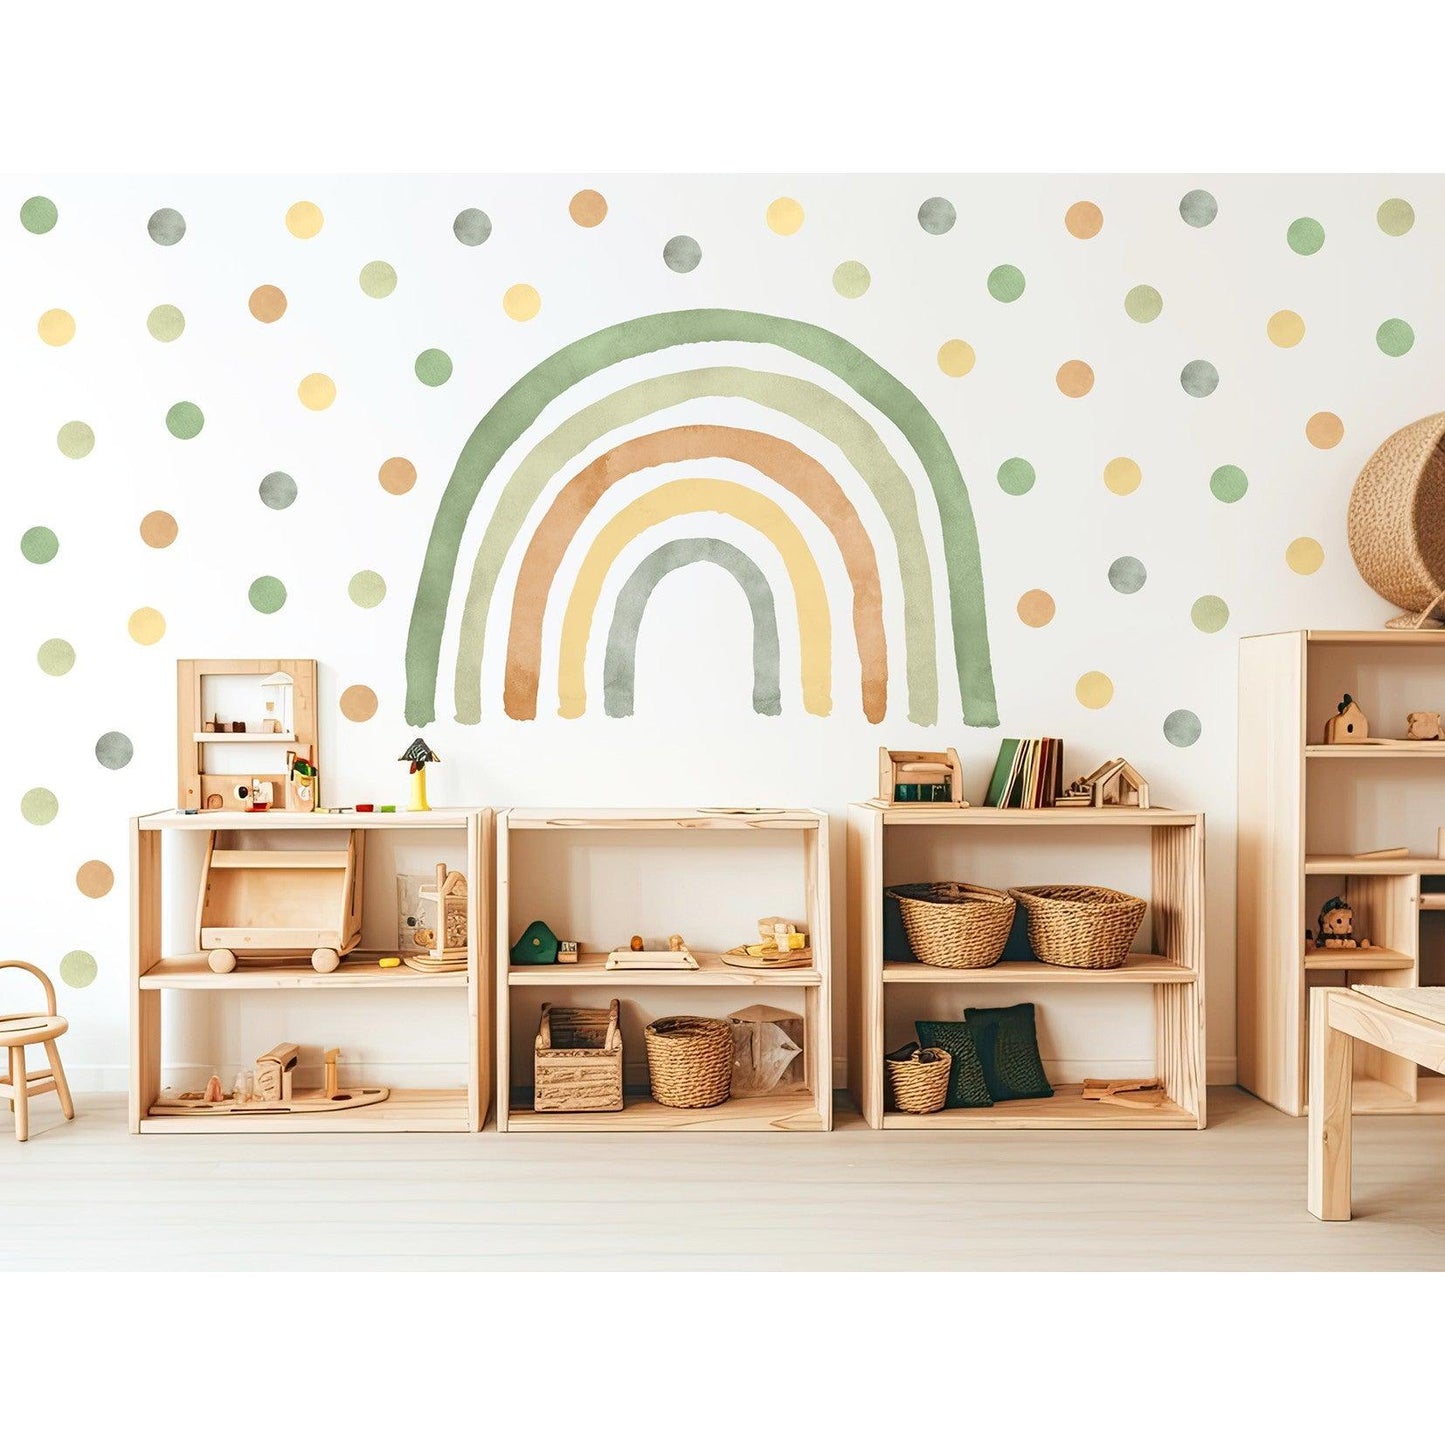 Wandtattoo Kinderzimmer - Regenbogen mit Punkte Grün